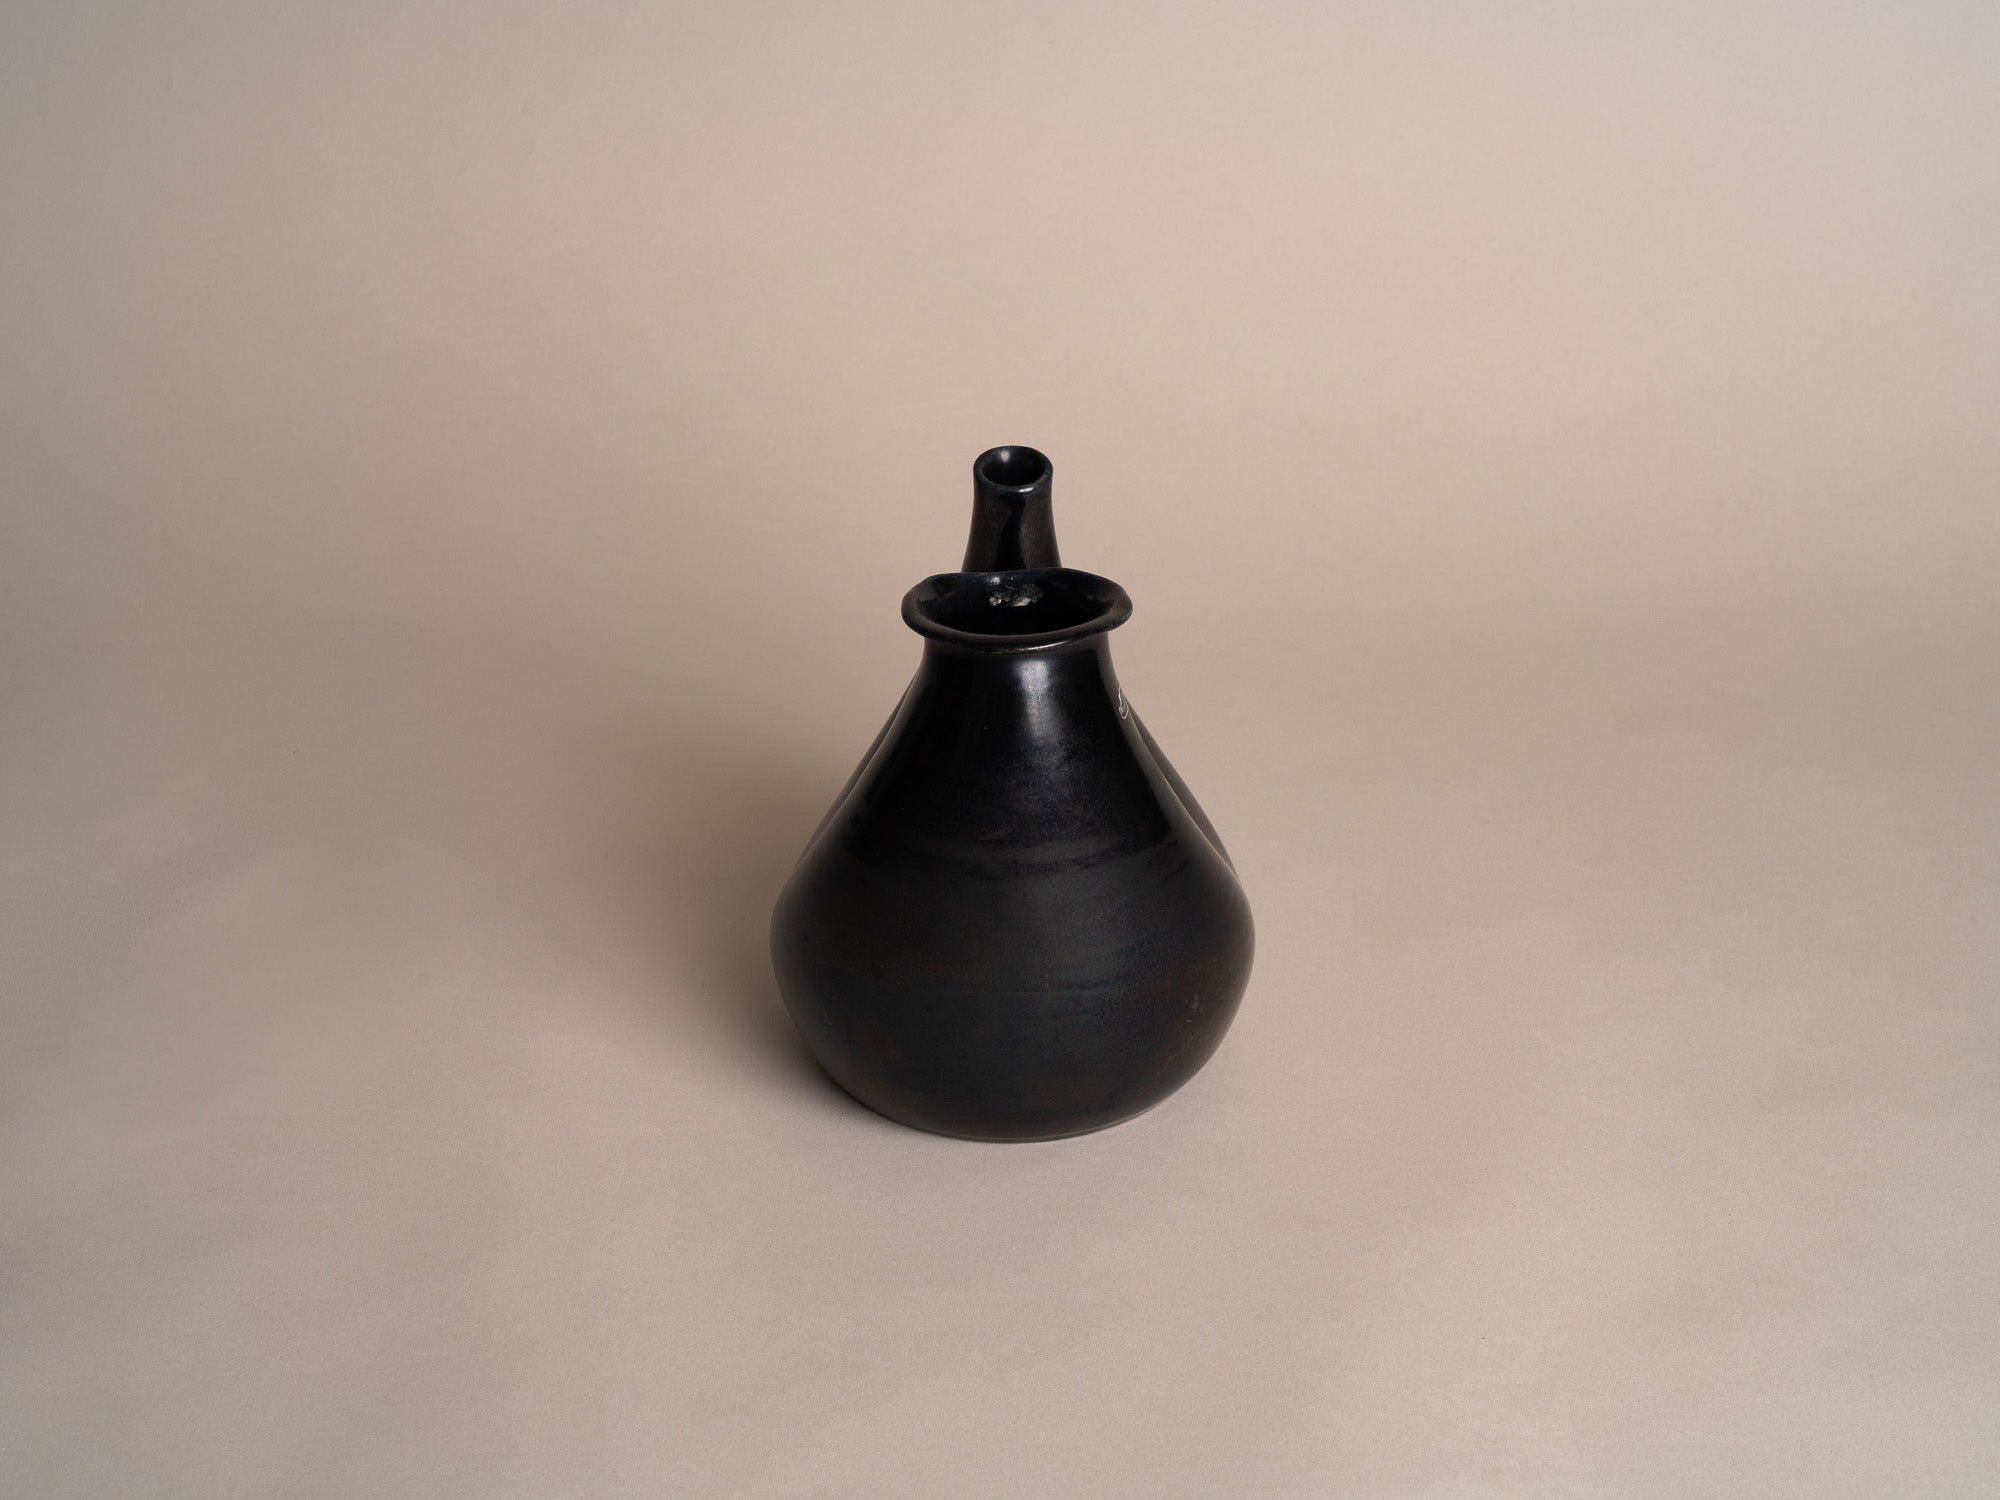 Vase biomorphique des Potiers d'Accolay, France (vers 1955)..Freeform Vase by les Potiers d'Accolay, France (ca 1955)